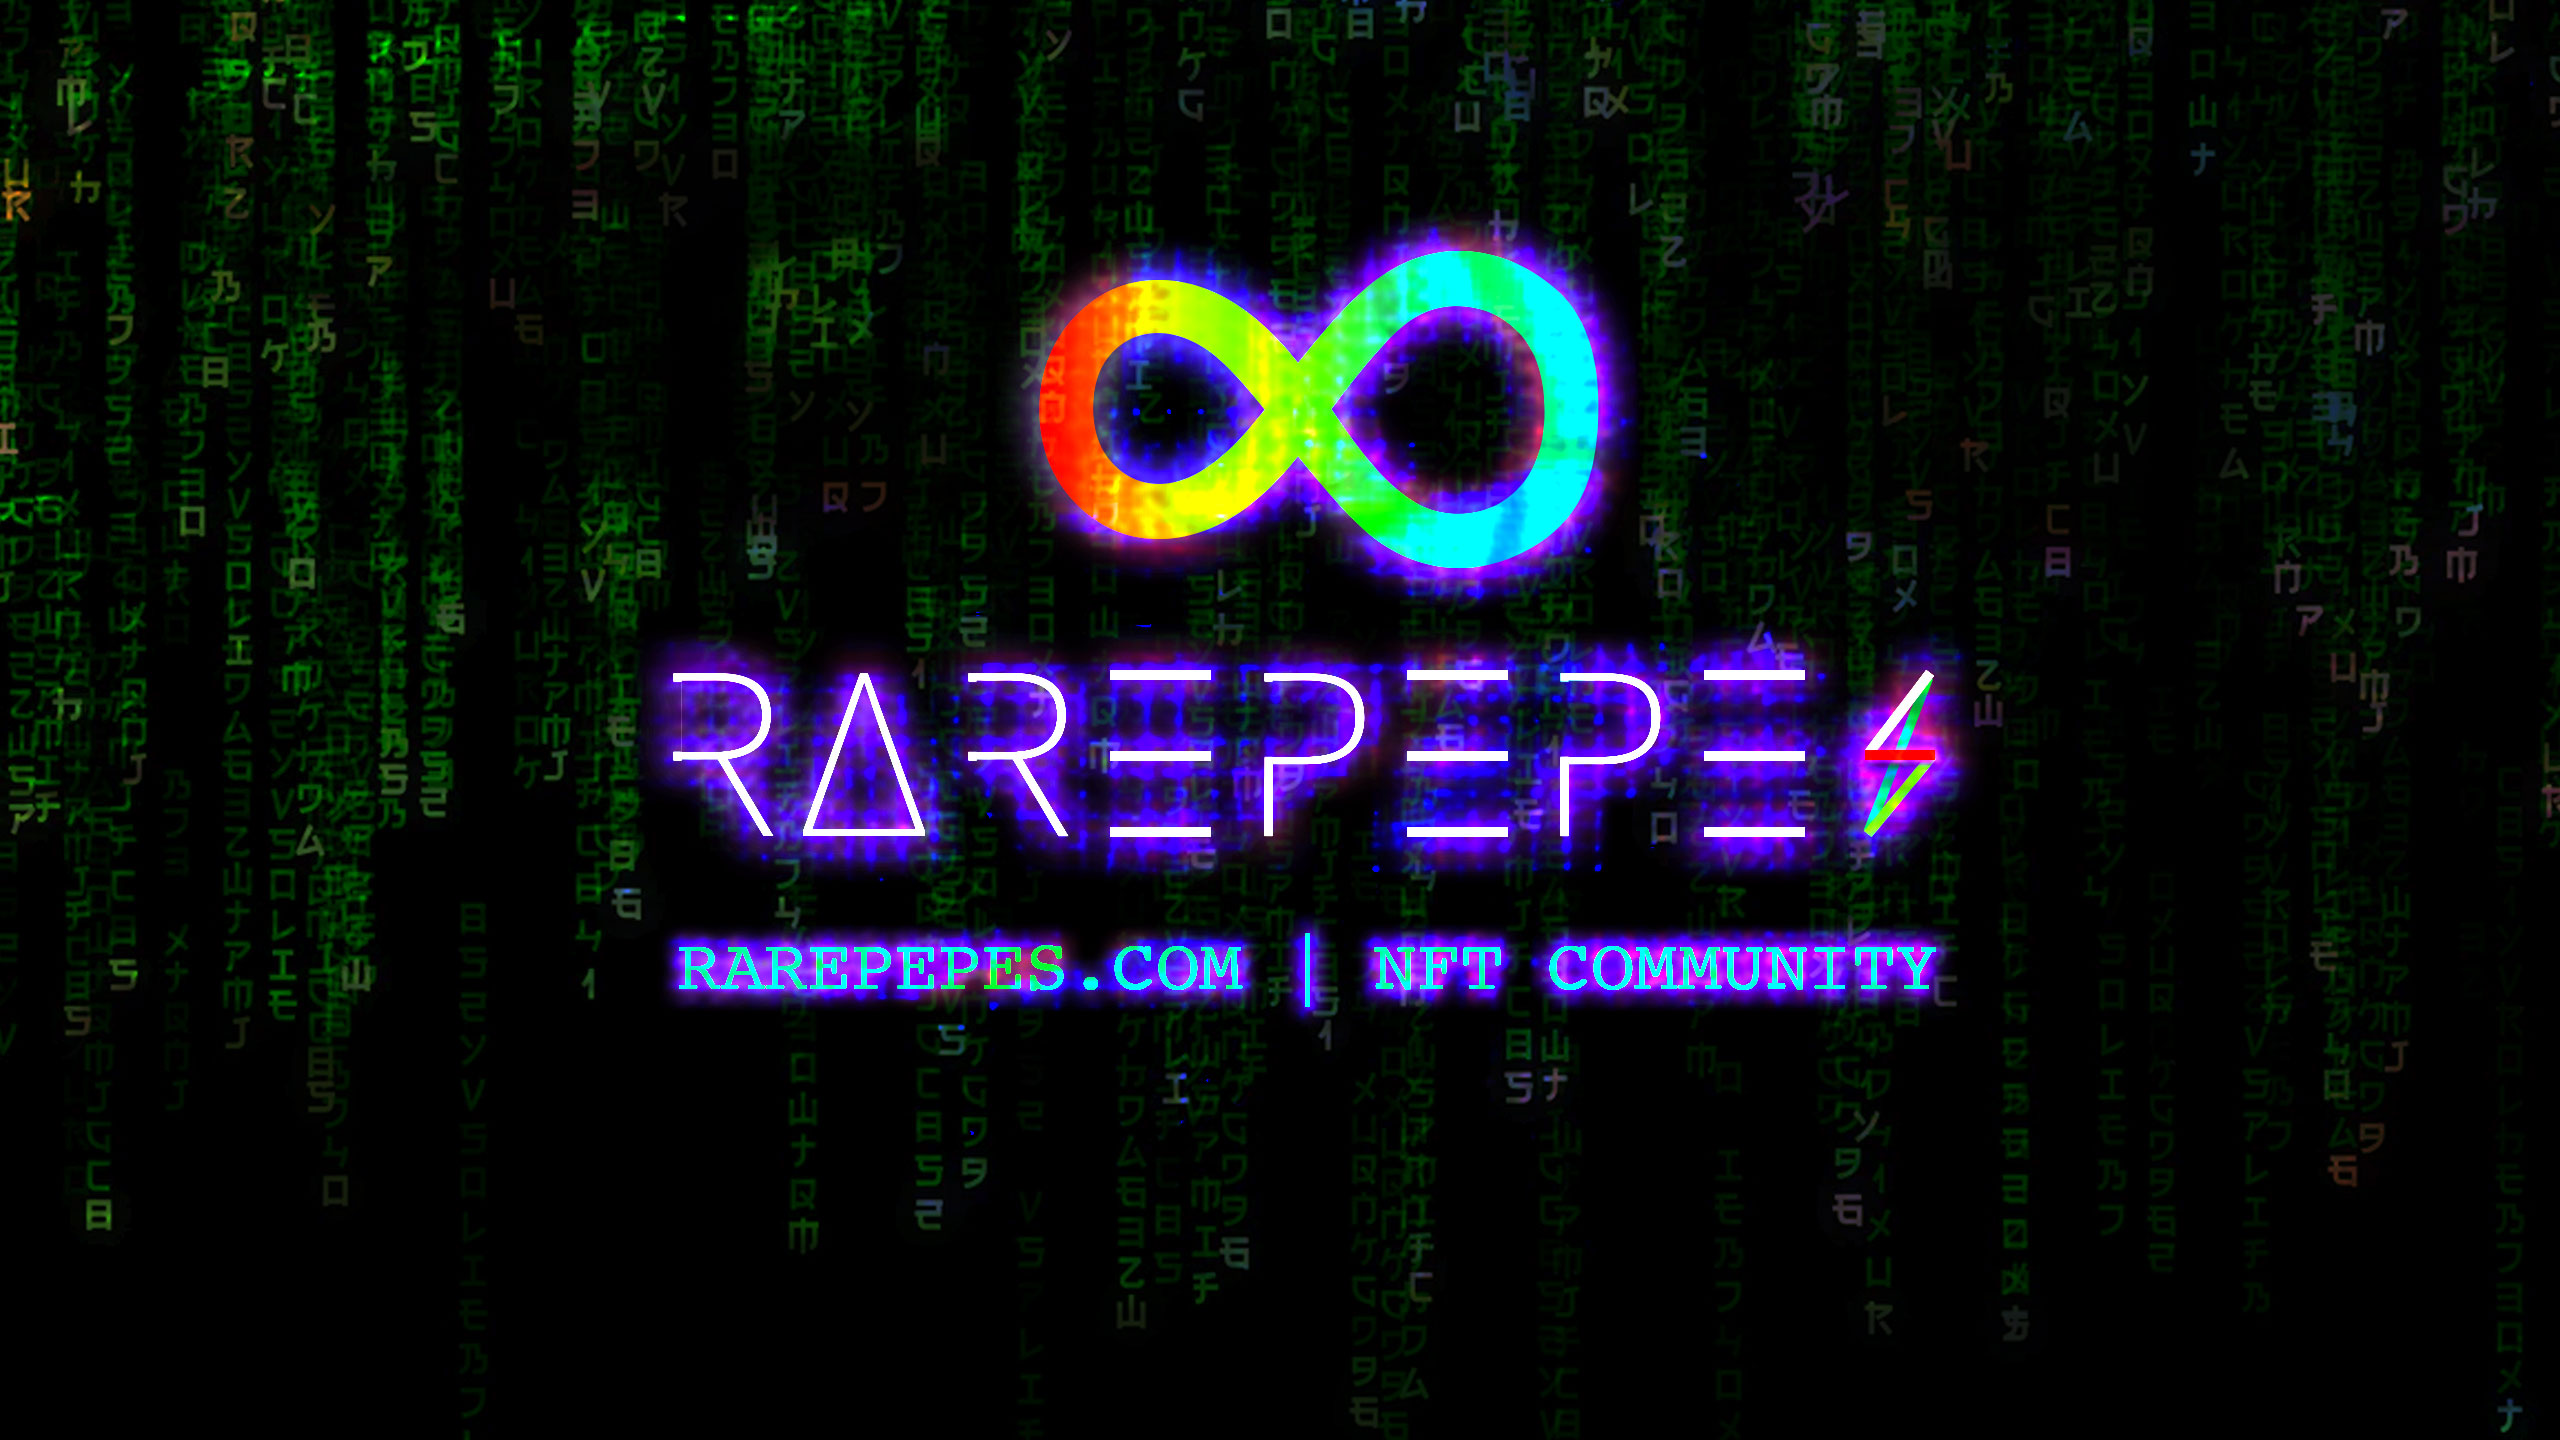 RAREPEPES_COM 橫幅